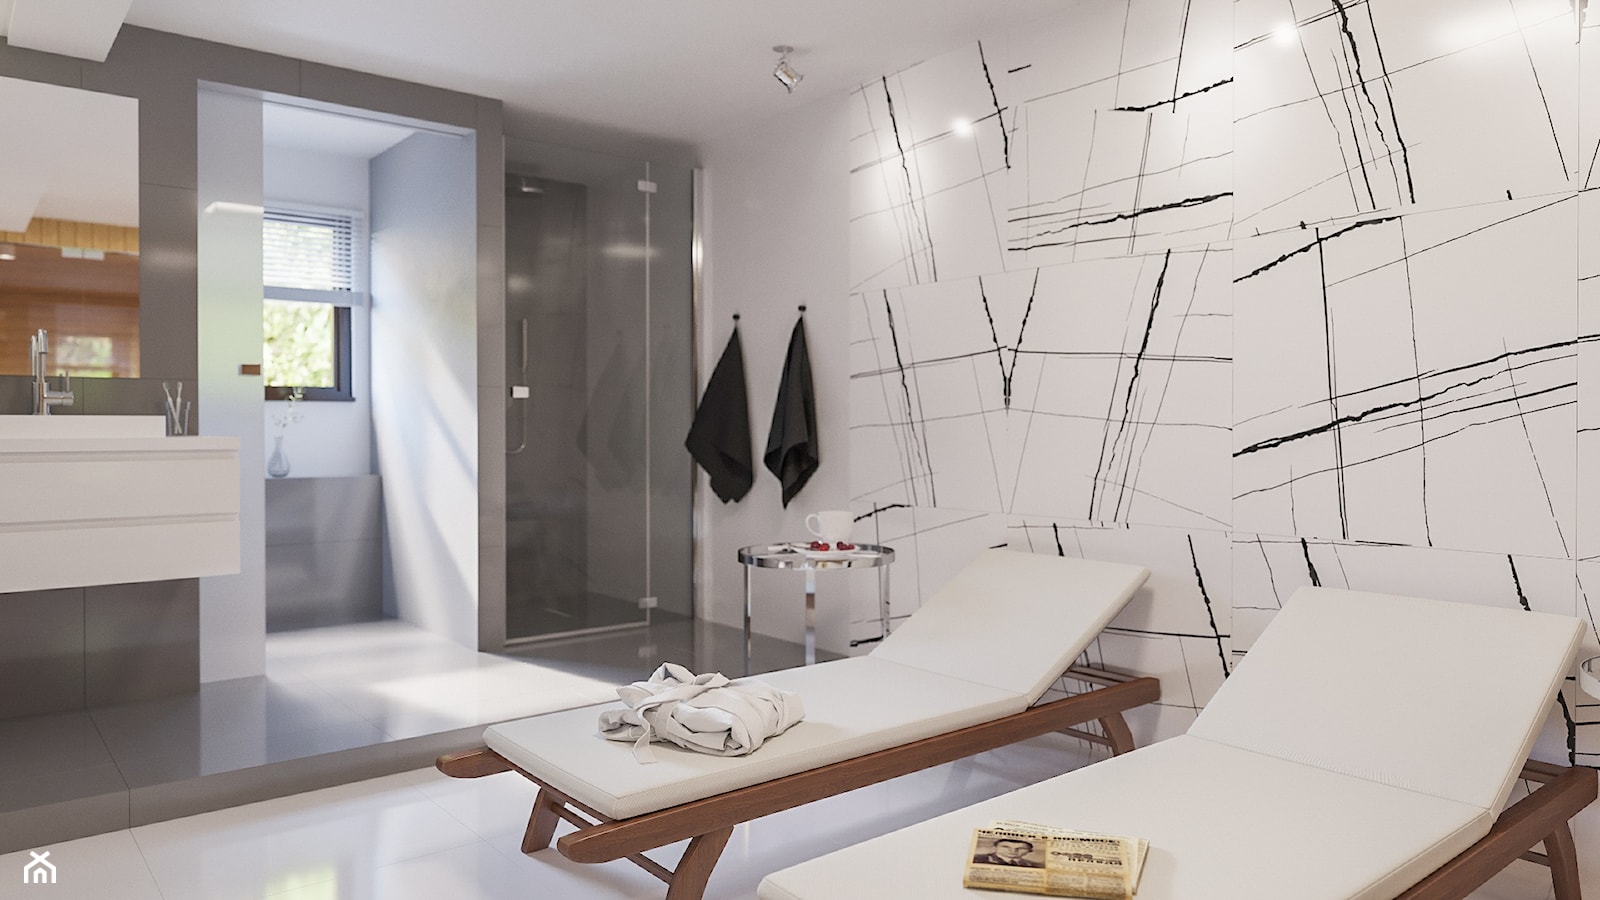 Łazienka połączona z sauną - zdjęcie od Art & Deco Design - Homebook